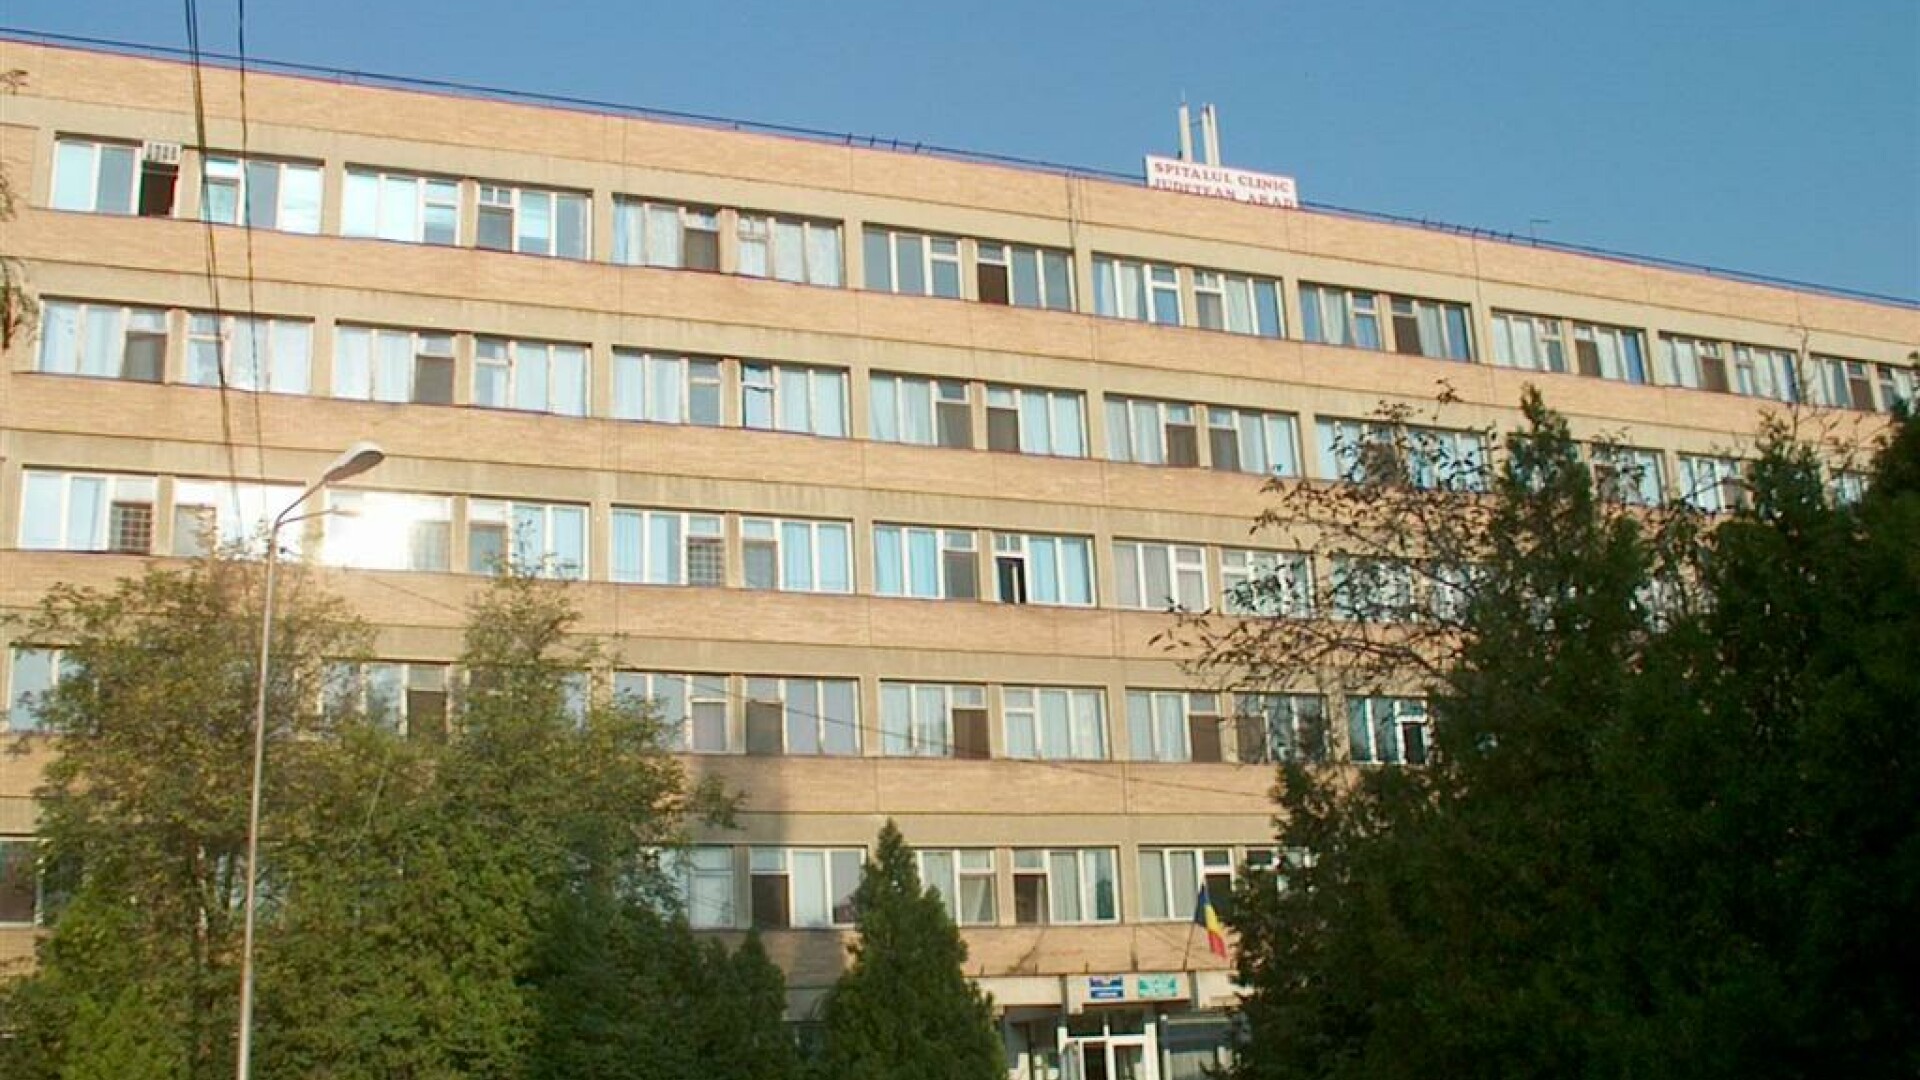 Spital Judetean Arad